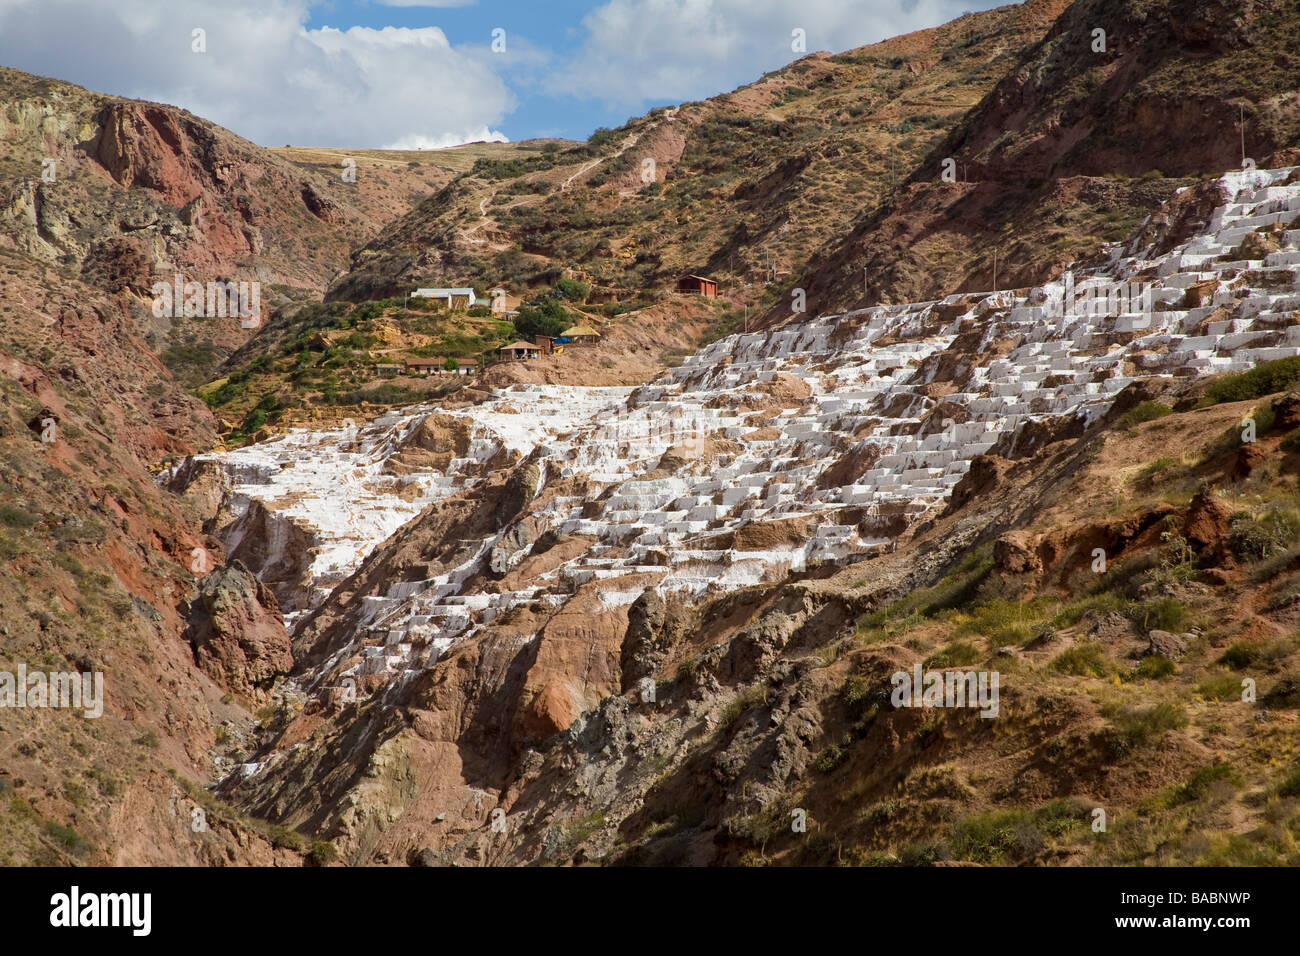 The salt pans at Maras, Peru. Stock Photo